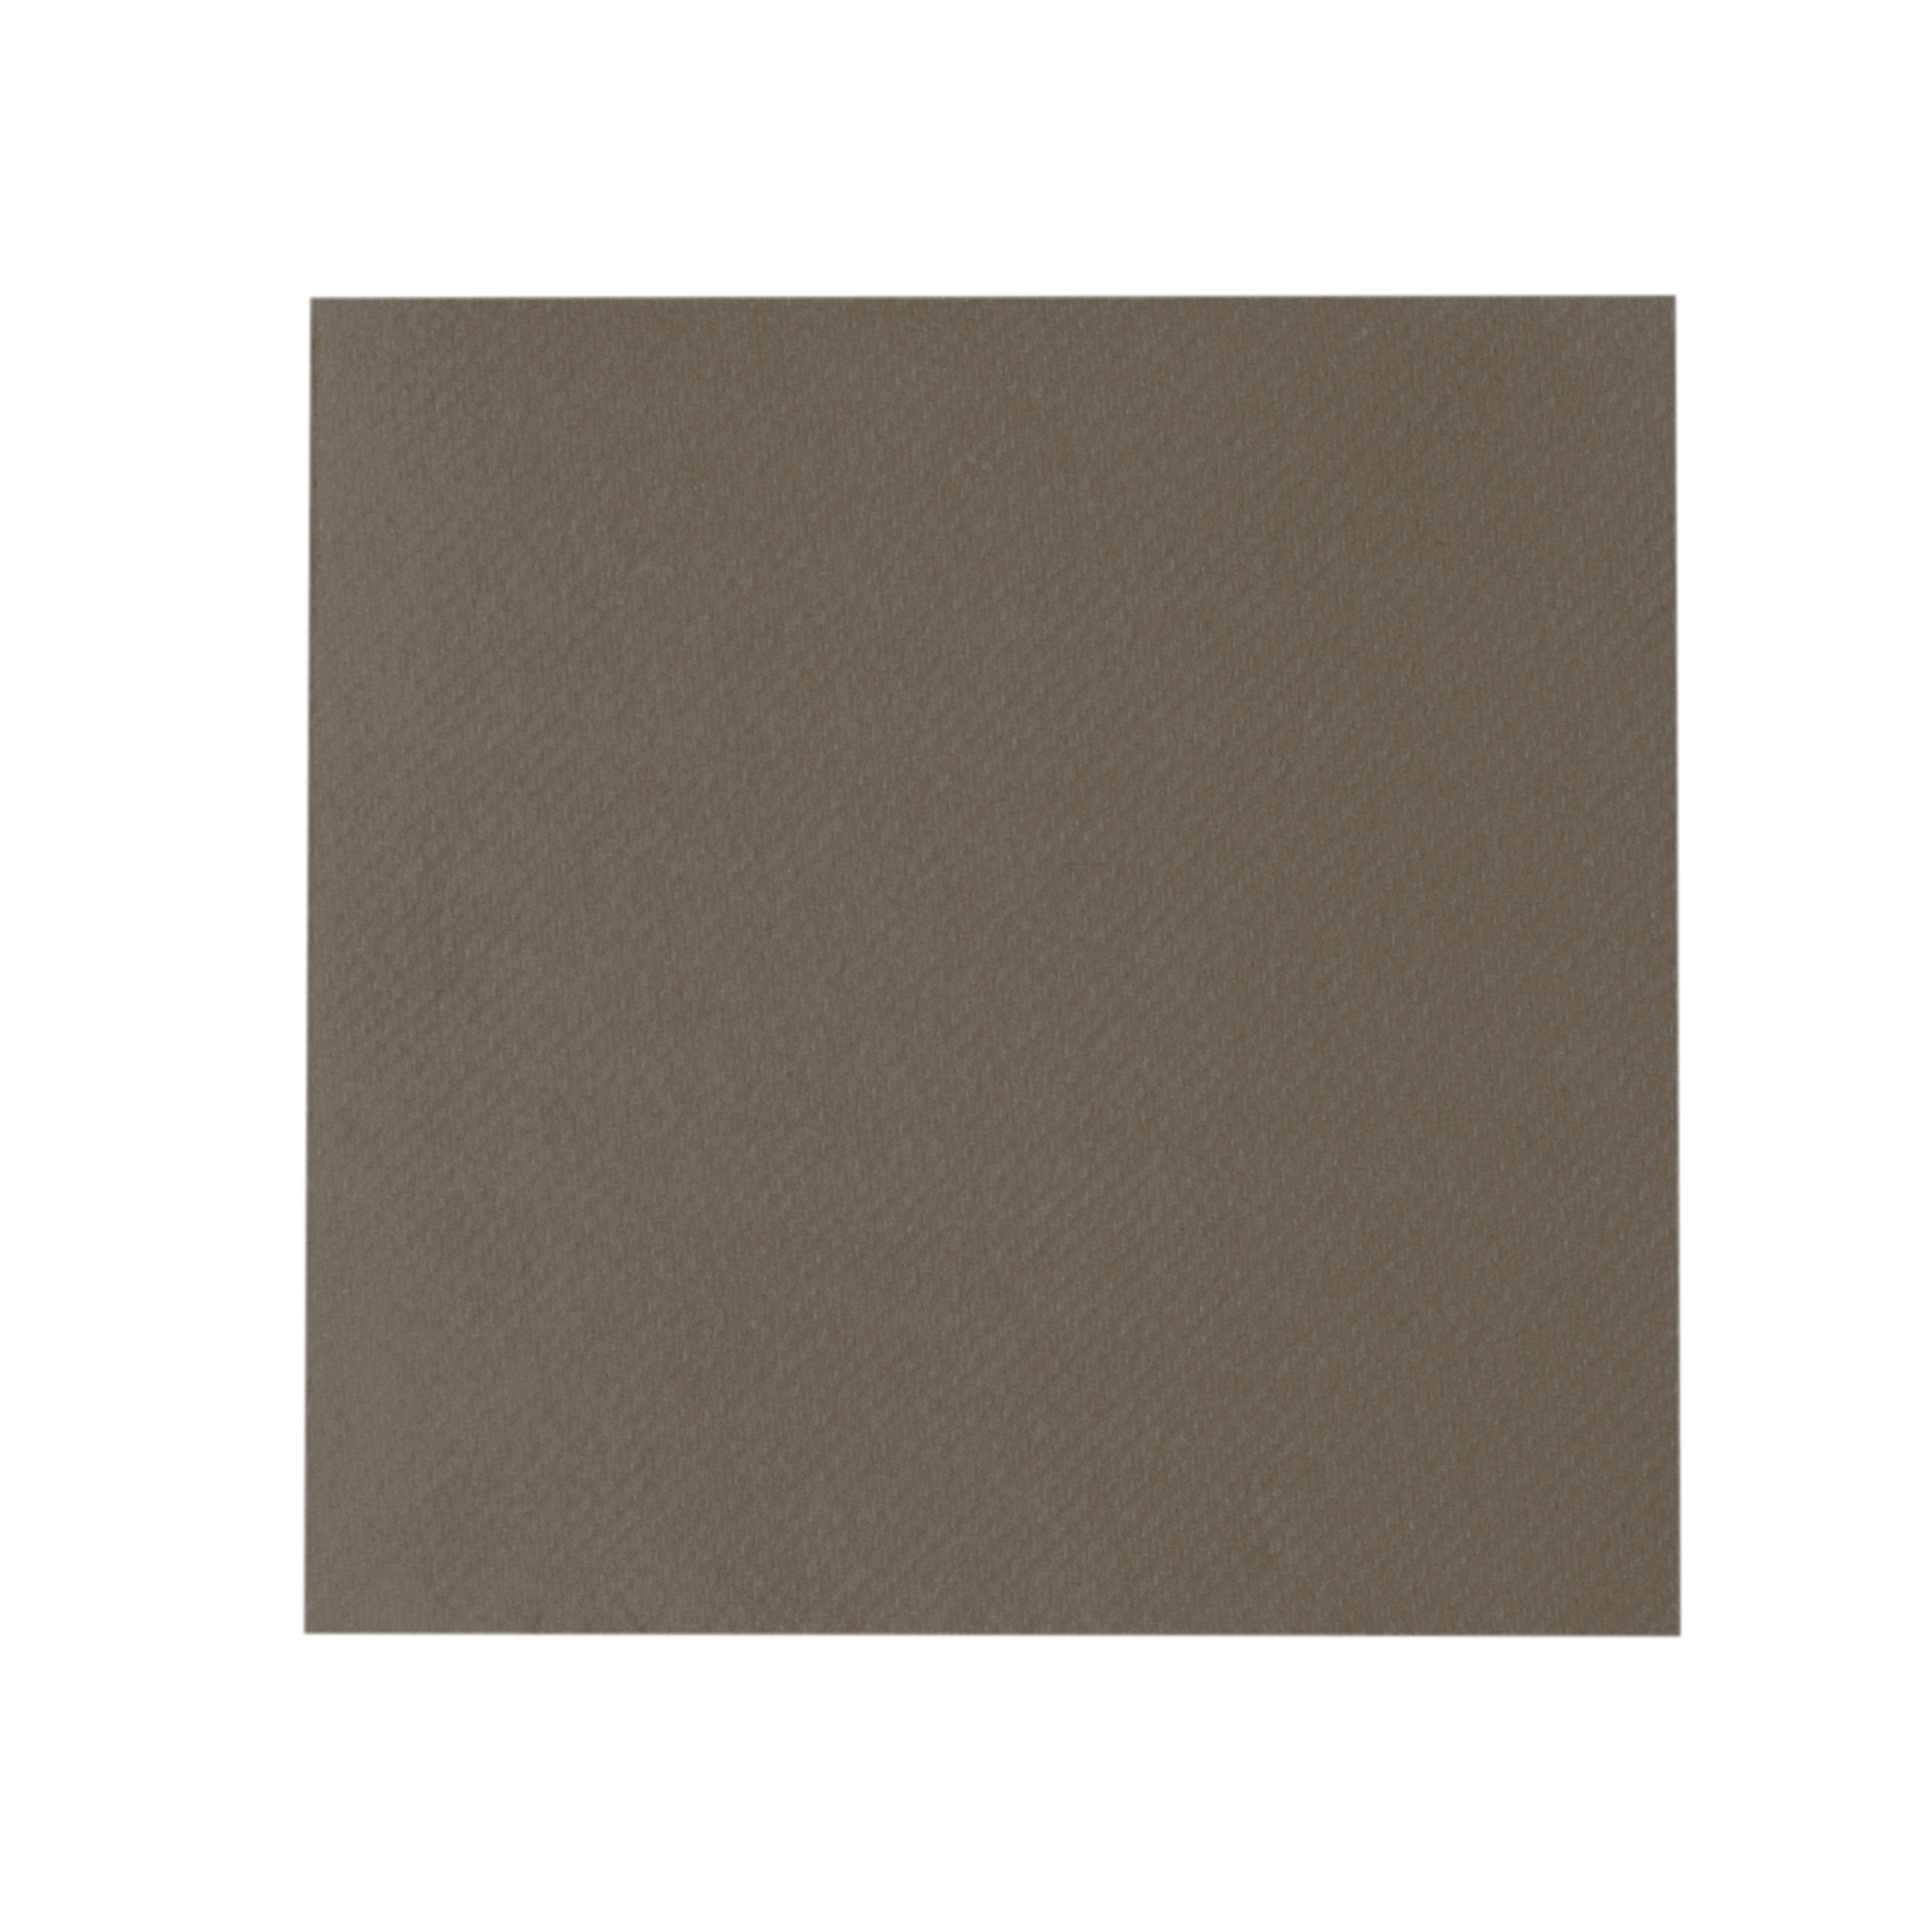 Mank Serviette Linclass-Light 1/4 Falz, 24 x 24 cm, Basic braun